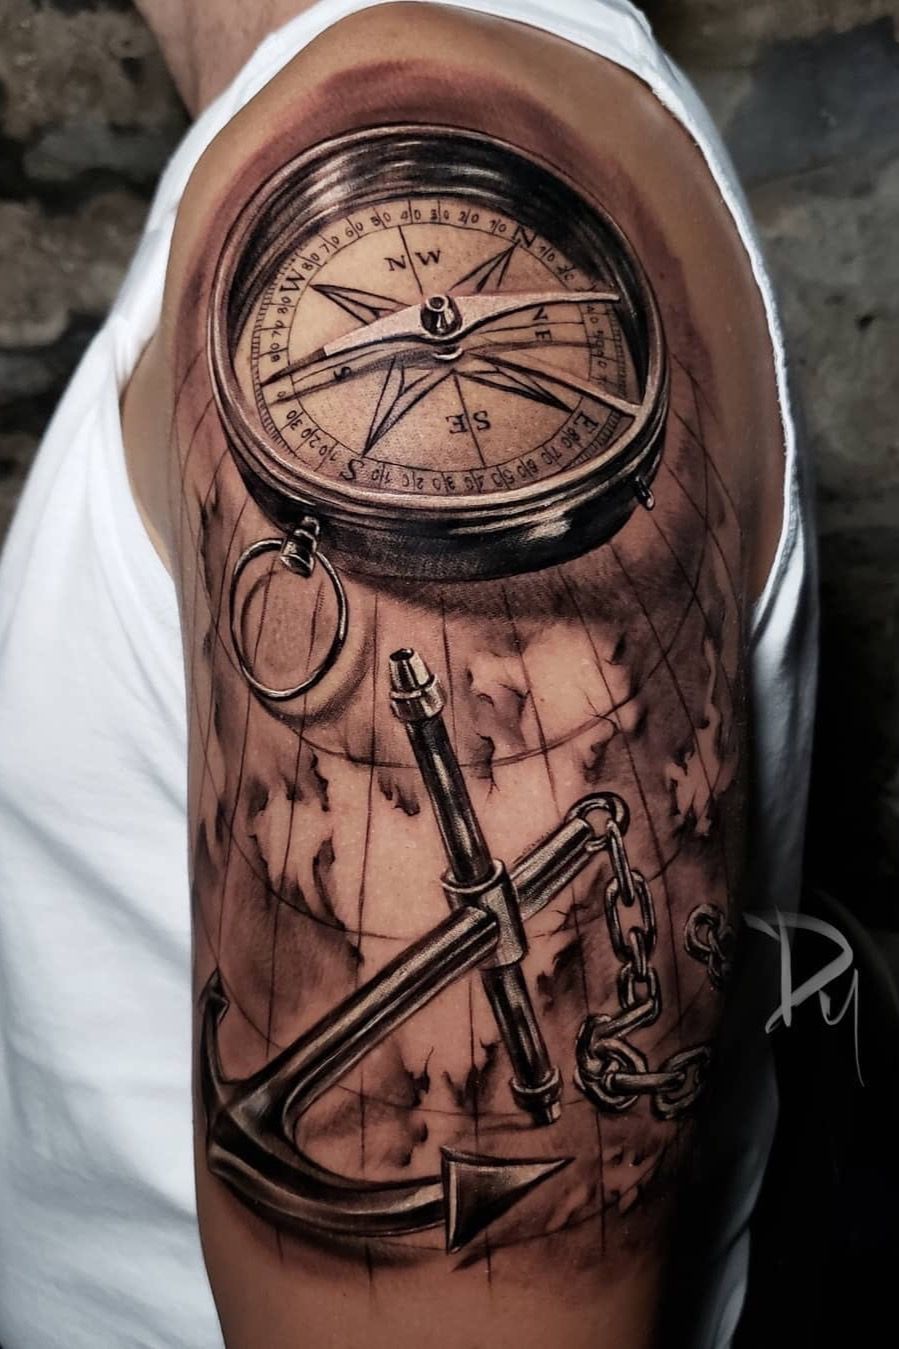 Robert l UK l Instagram robertiberiu l ESSEX l SUFFOLK  Clock tattoo  sleeve Compass tattoo forearm Compass and map tattoo